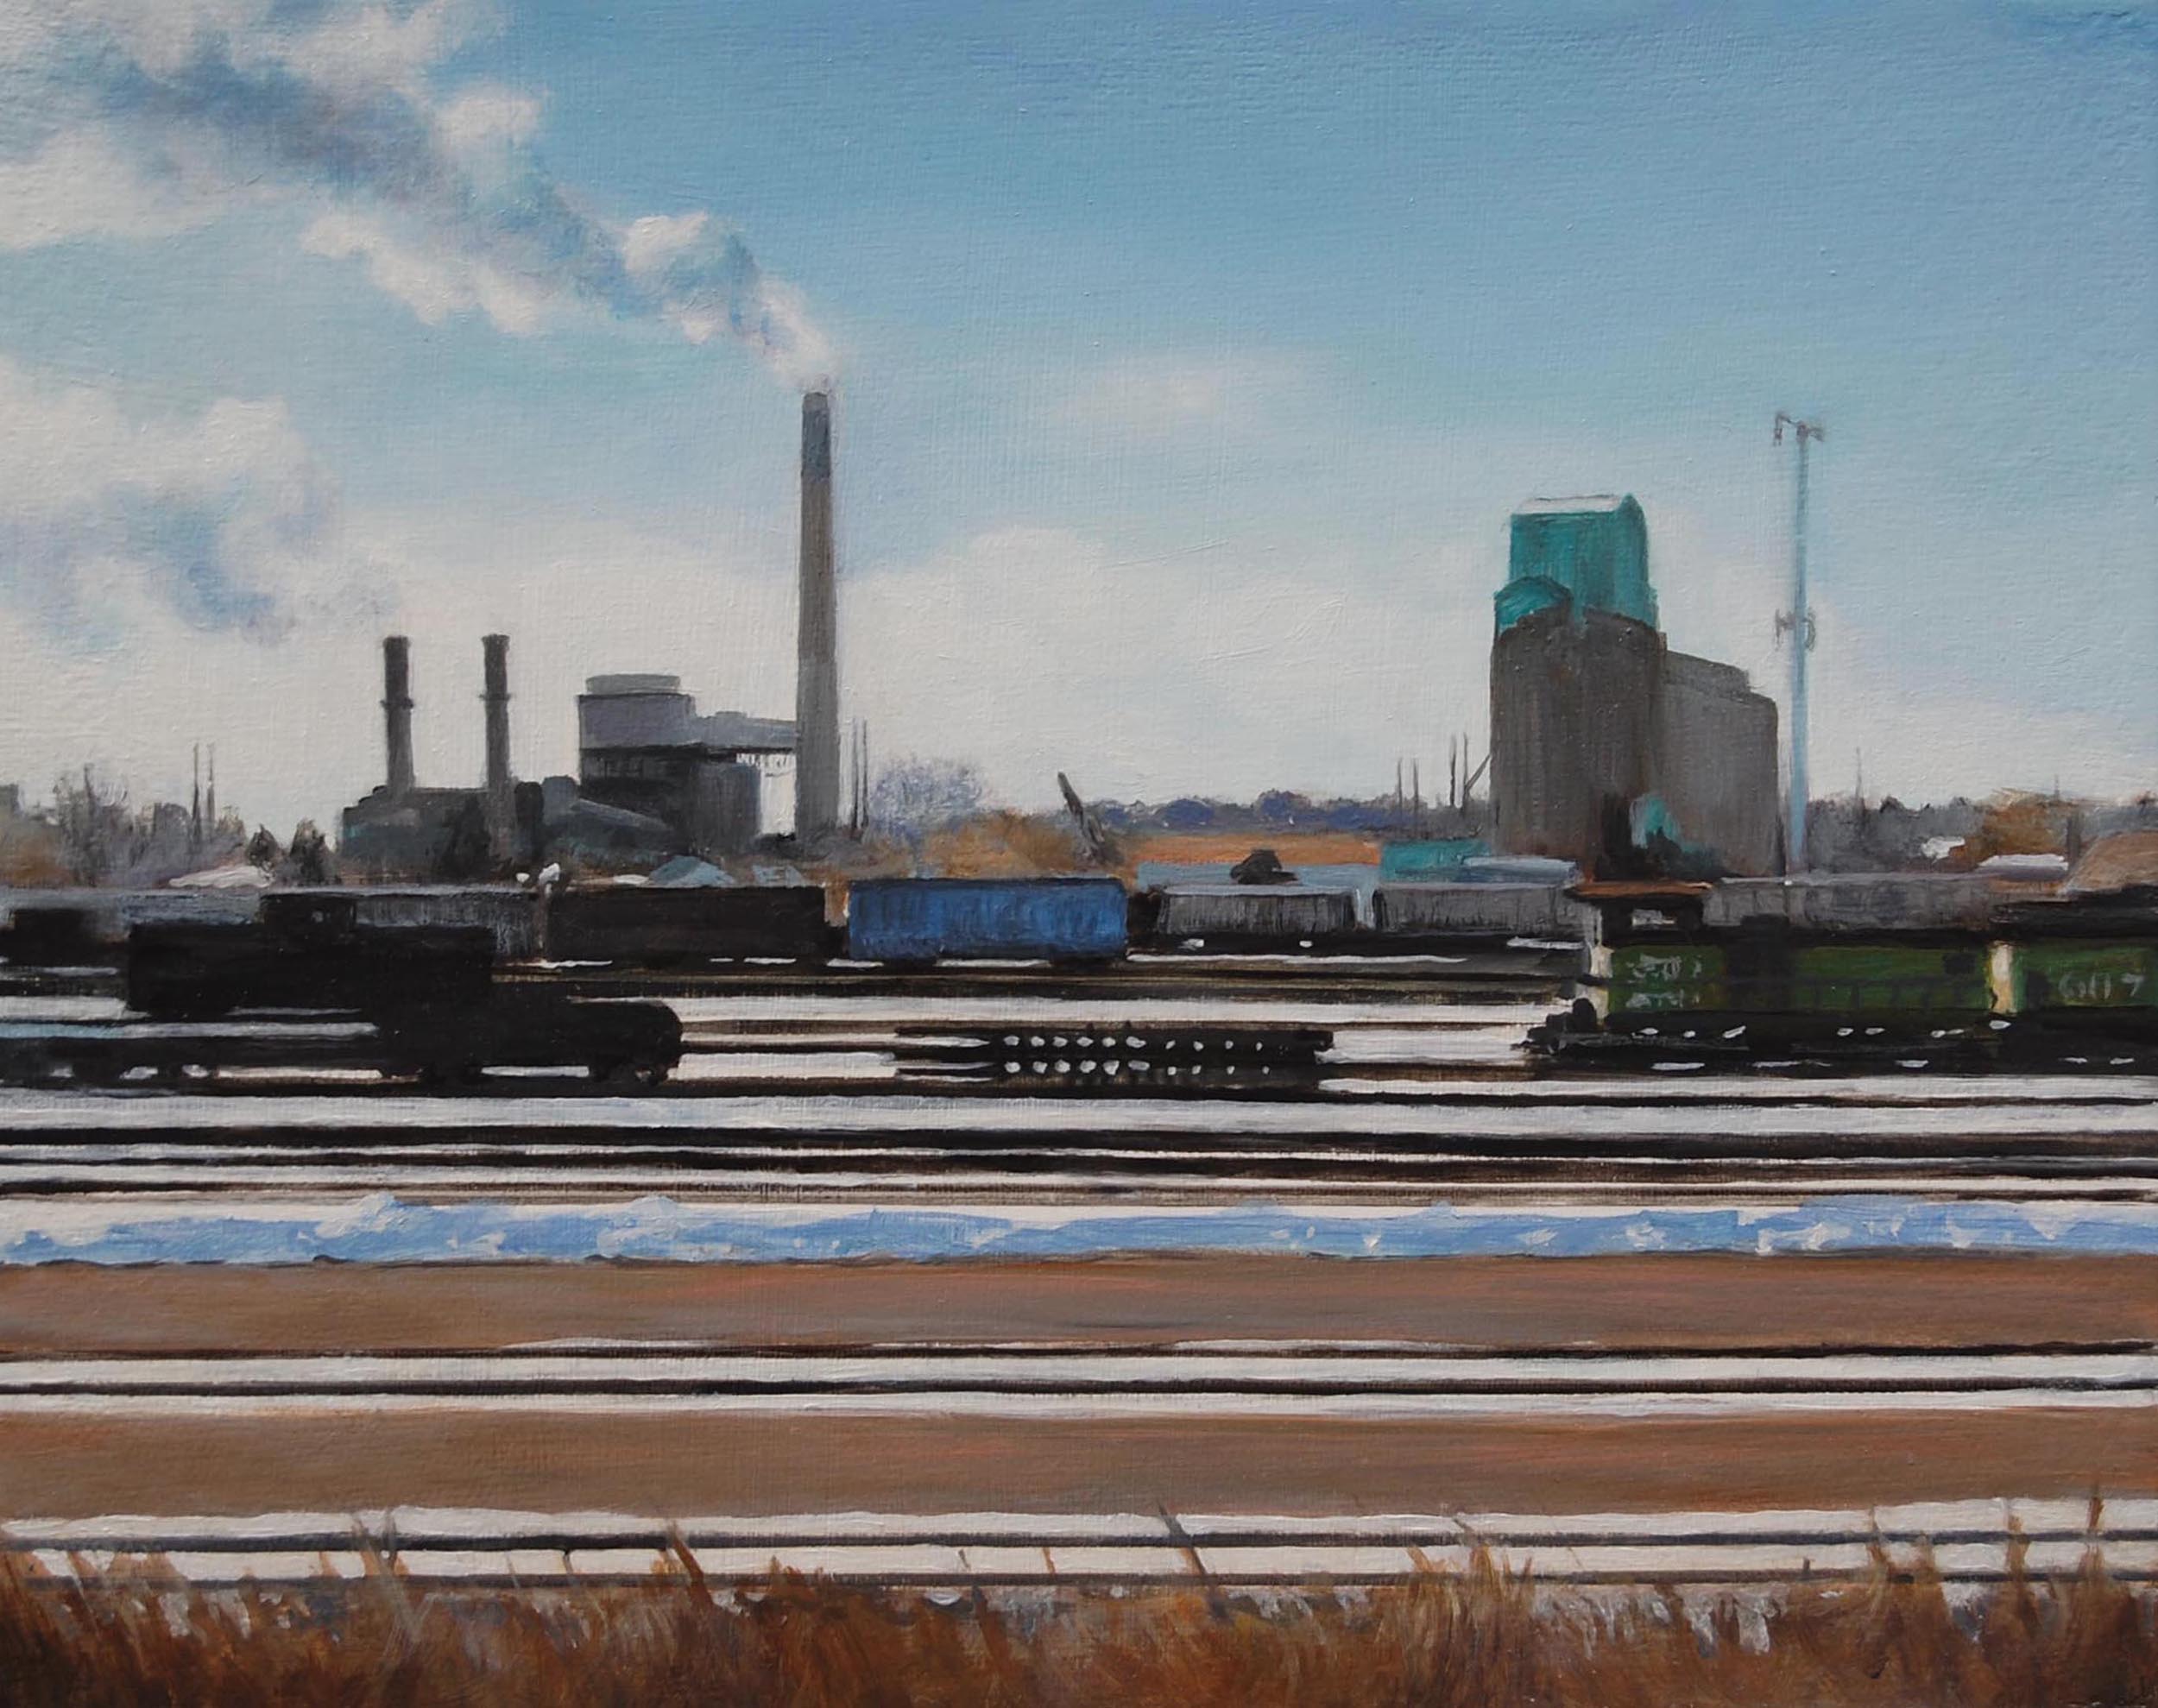   Rail Yard, NE Minneapolis   2008  Oil on canvas  8 x 10 inches       